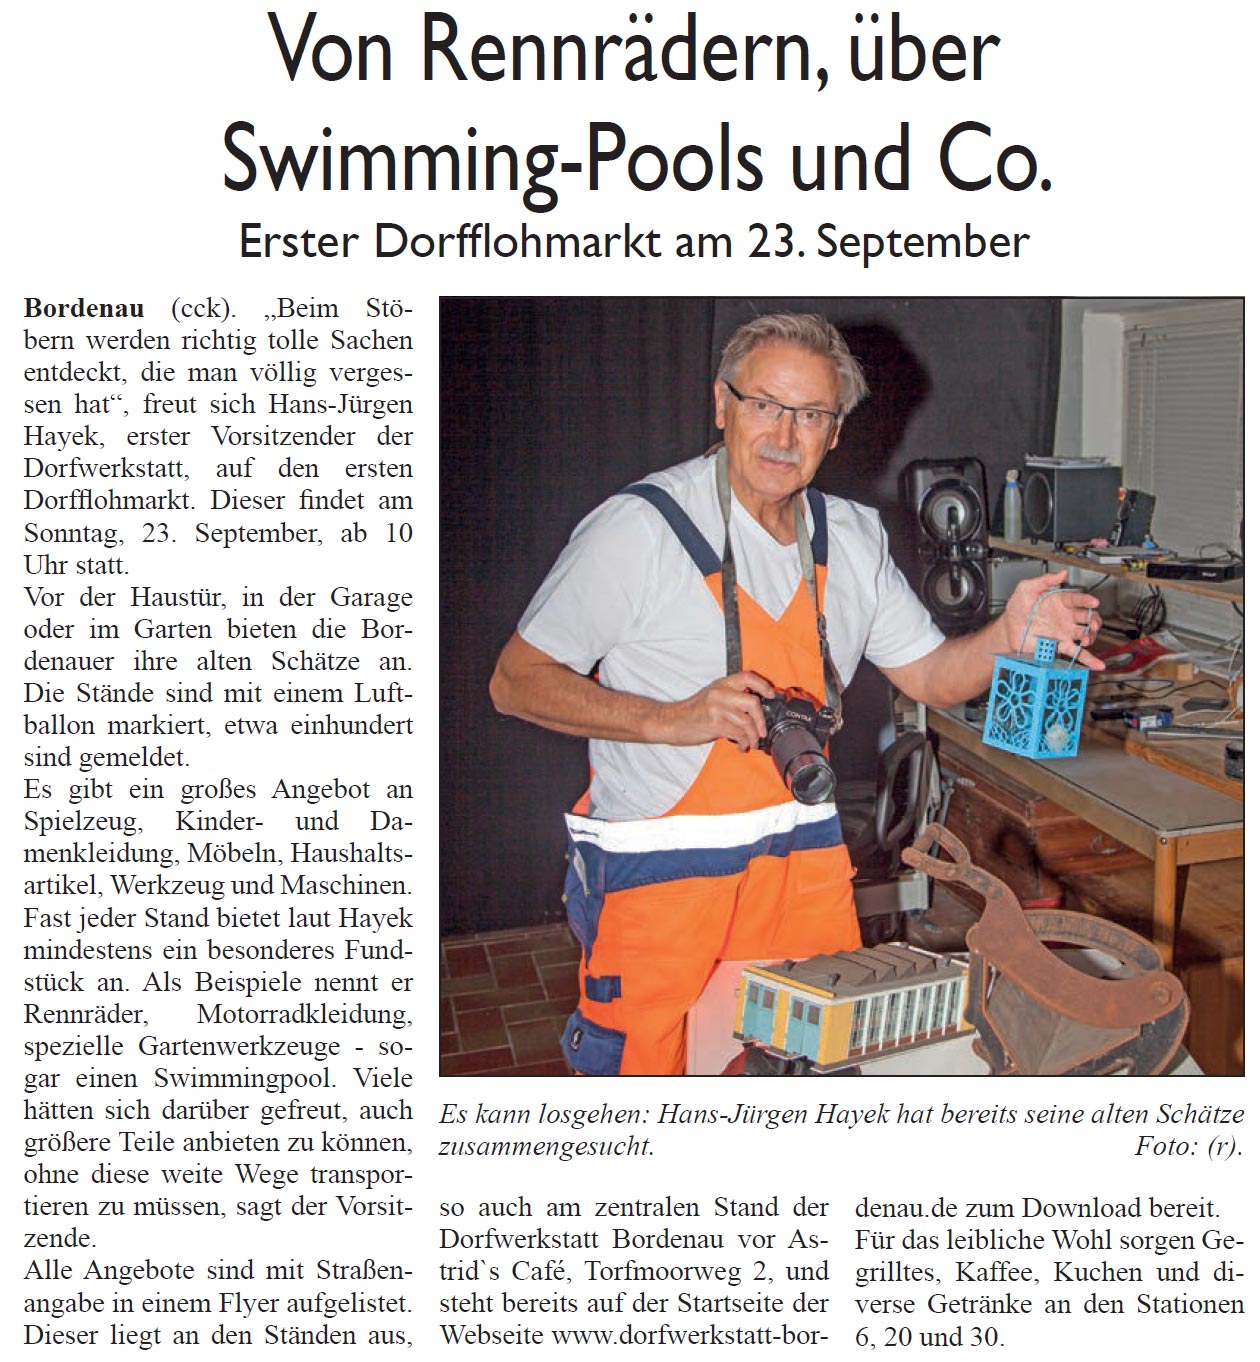 Von Rennrdern, ber Swimminig-Pools und Co. (Bild und Text)